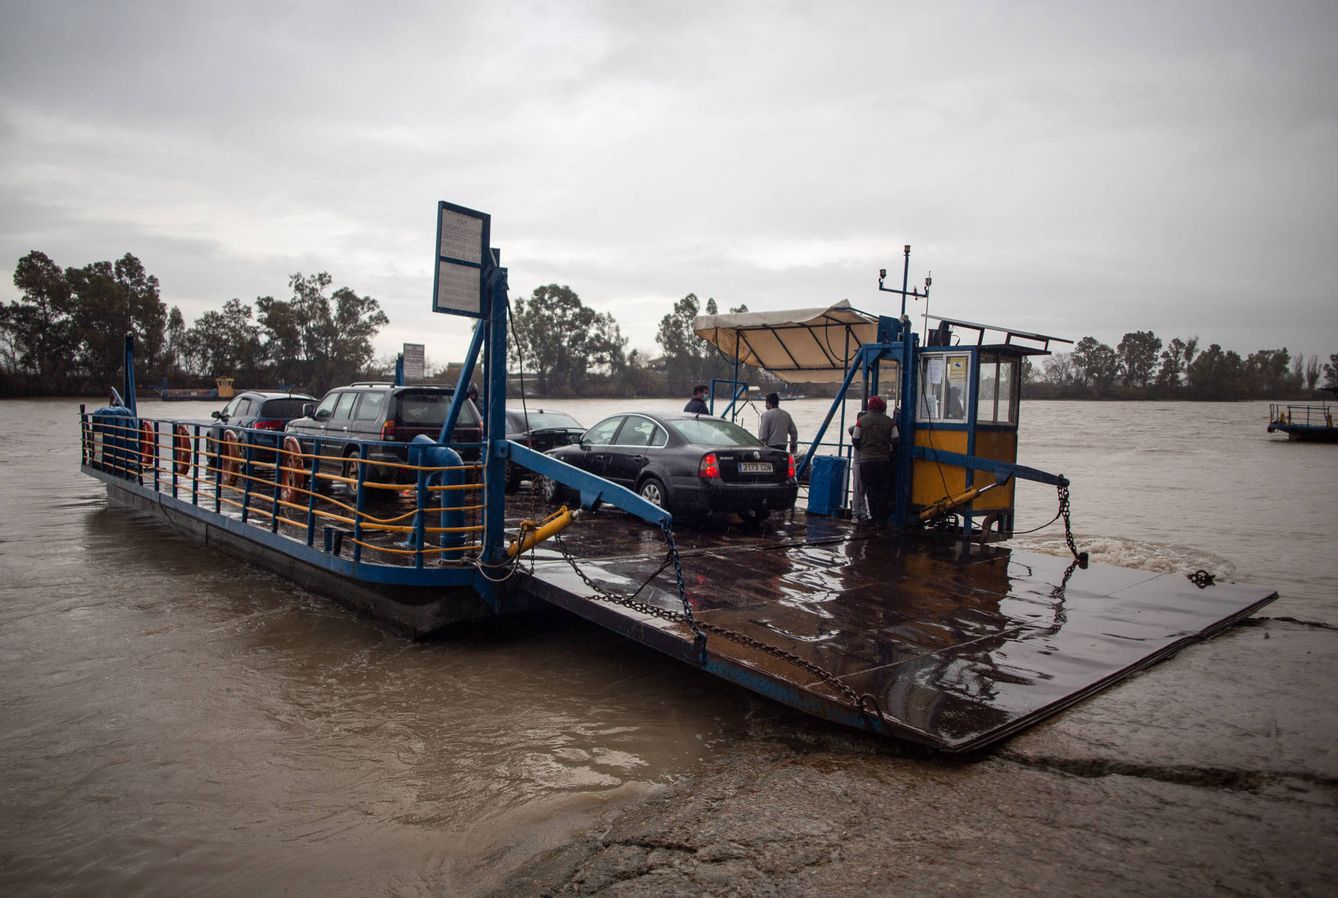 La barcaza que cada día cruza el río transportando coches. (Foto: Fernando Ruso)